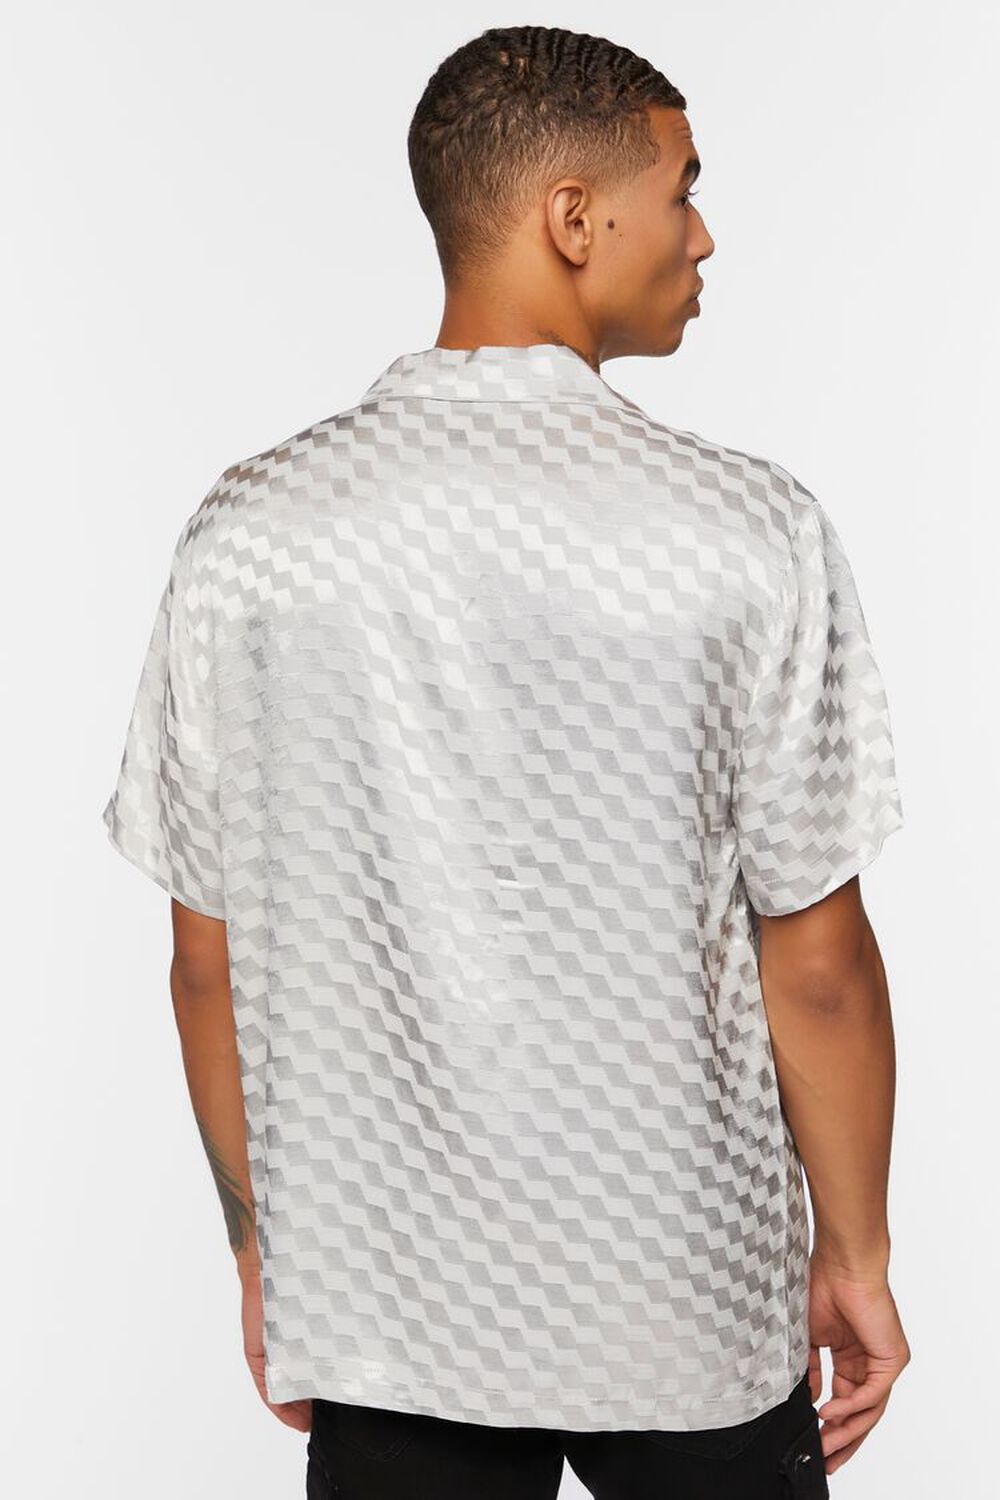 GREY Satin Checkered Shirt, image 3